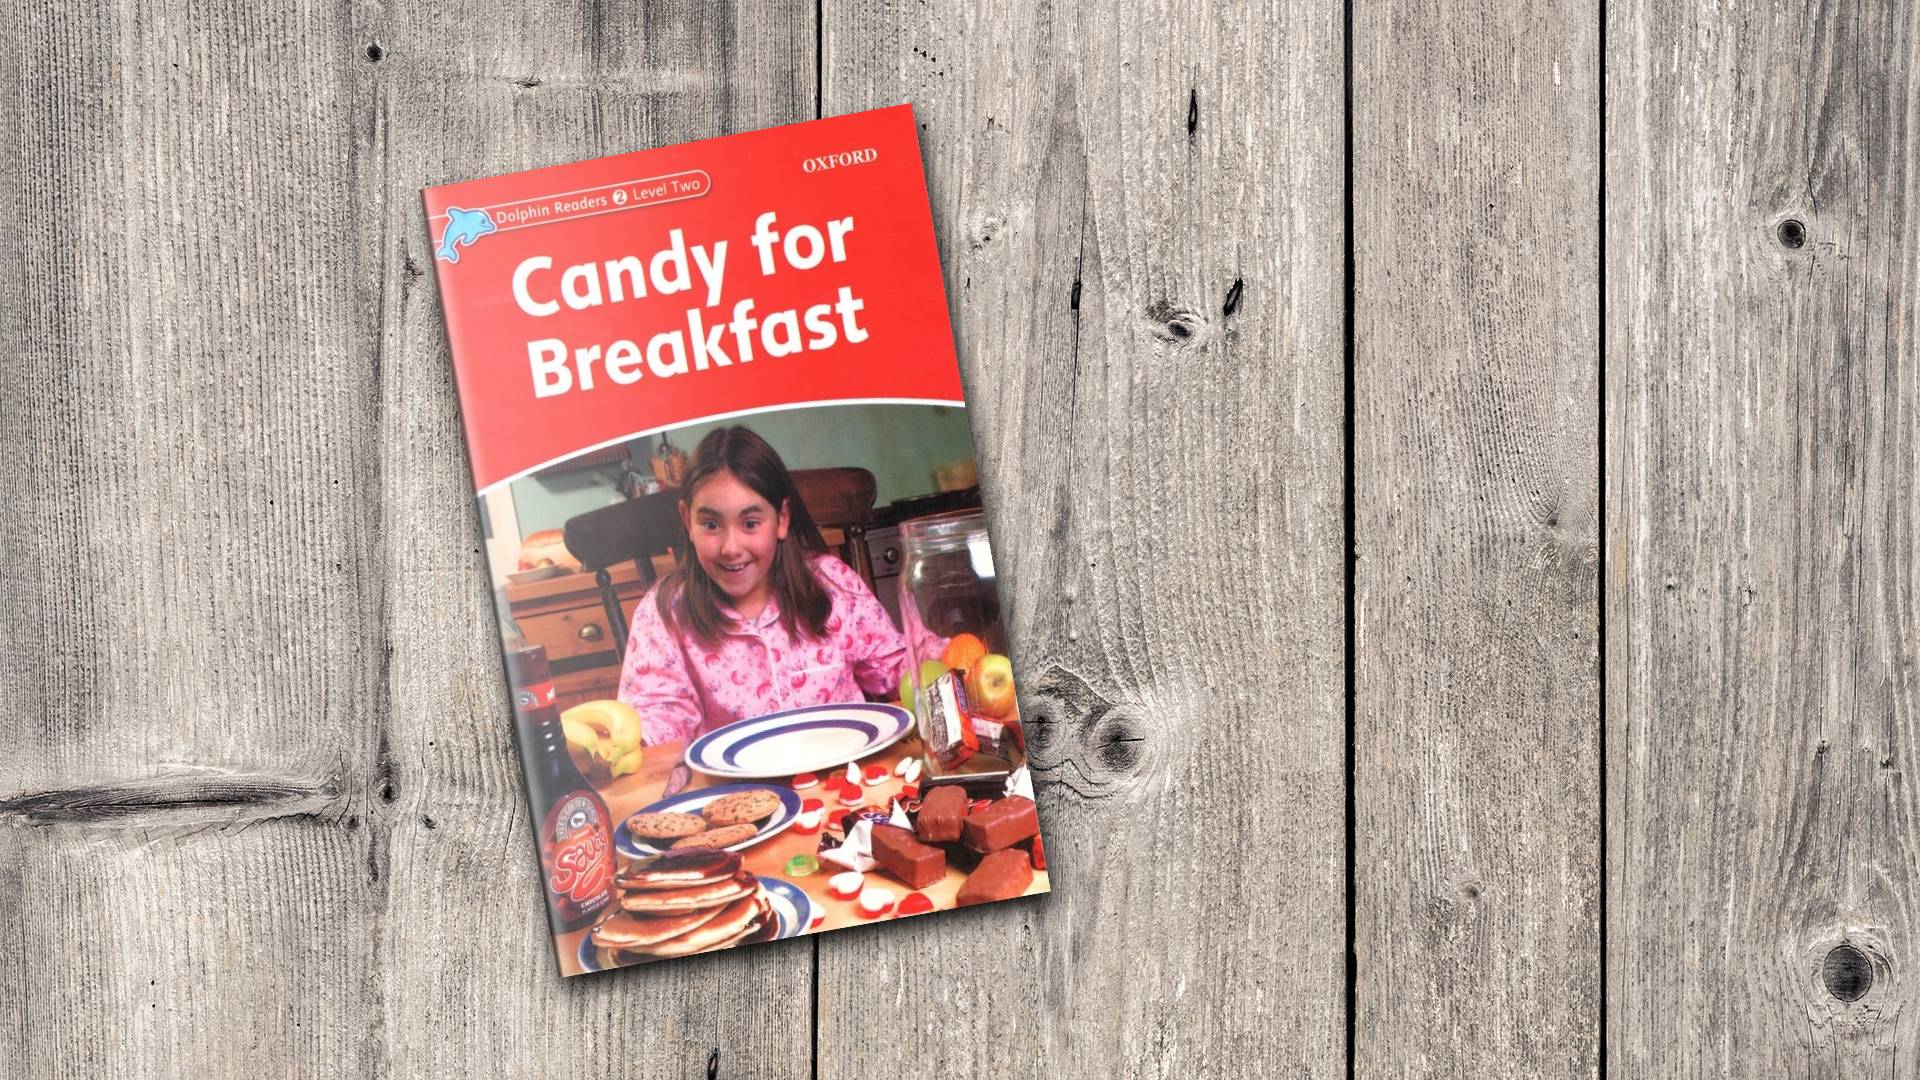 خرید کتاب زبان | فروشگاه اینترنتی کتاب زبان | Dolphin Readers 2 Level Two Candy for Breakfast | داستان دلفین ریدرز دو آب نبات برای صبحانه